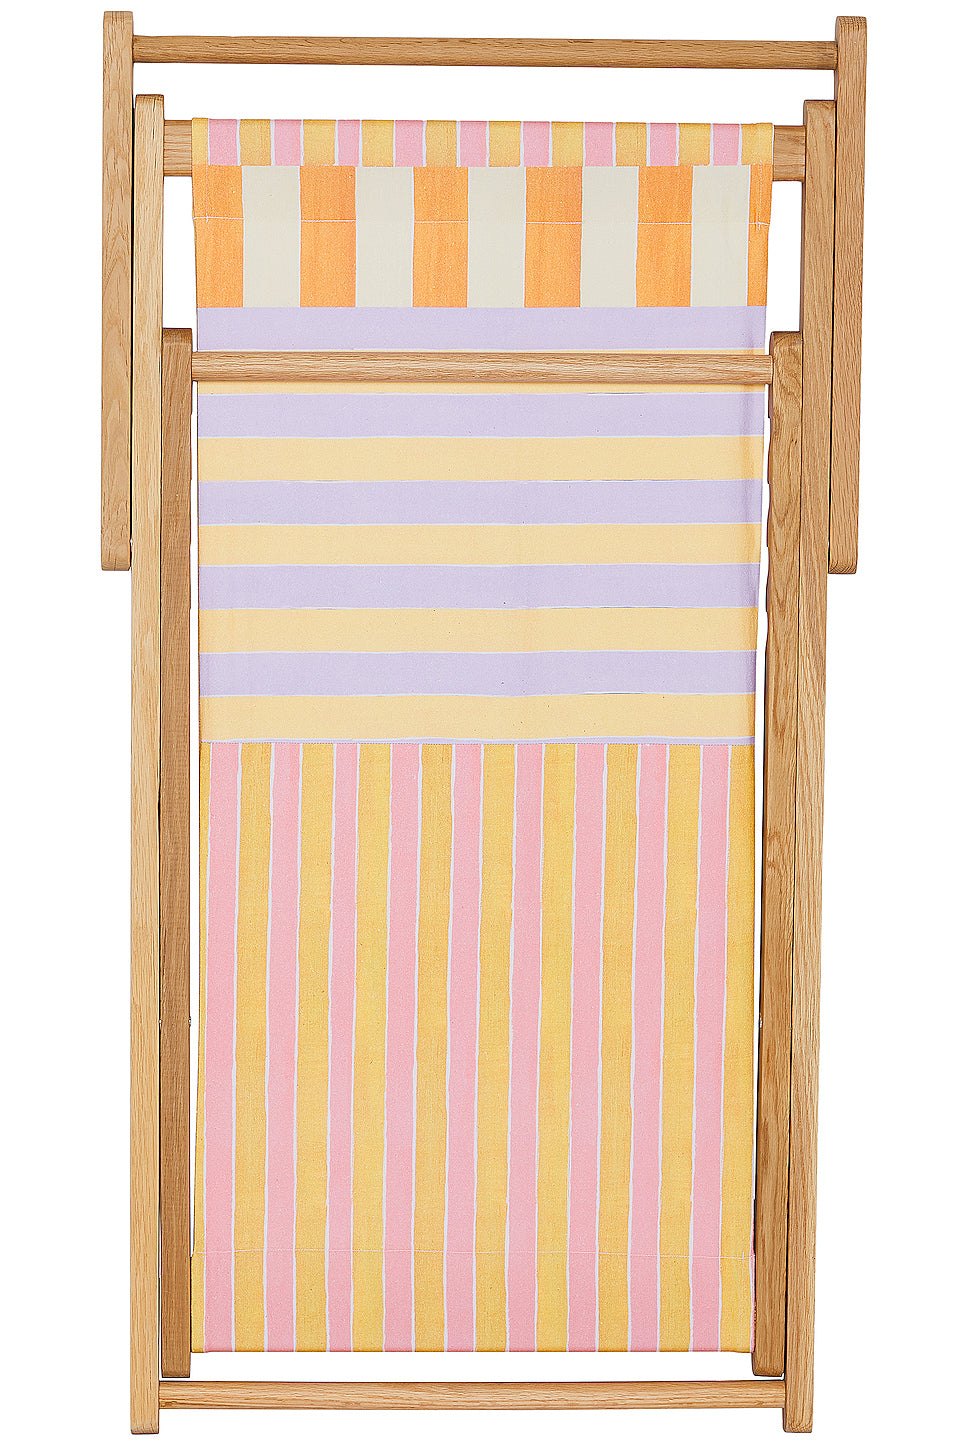 X FWRD Beach Chair